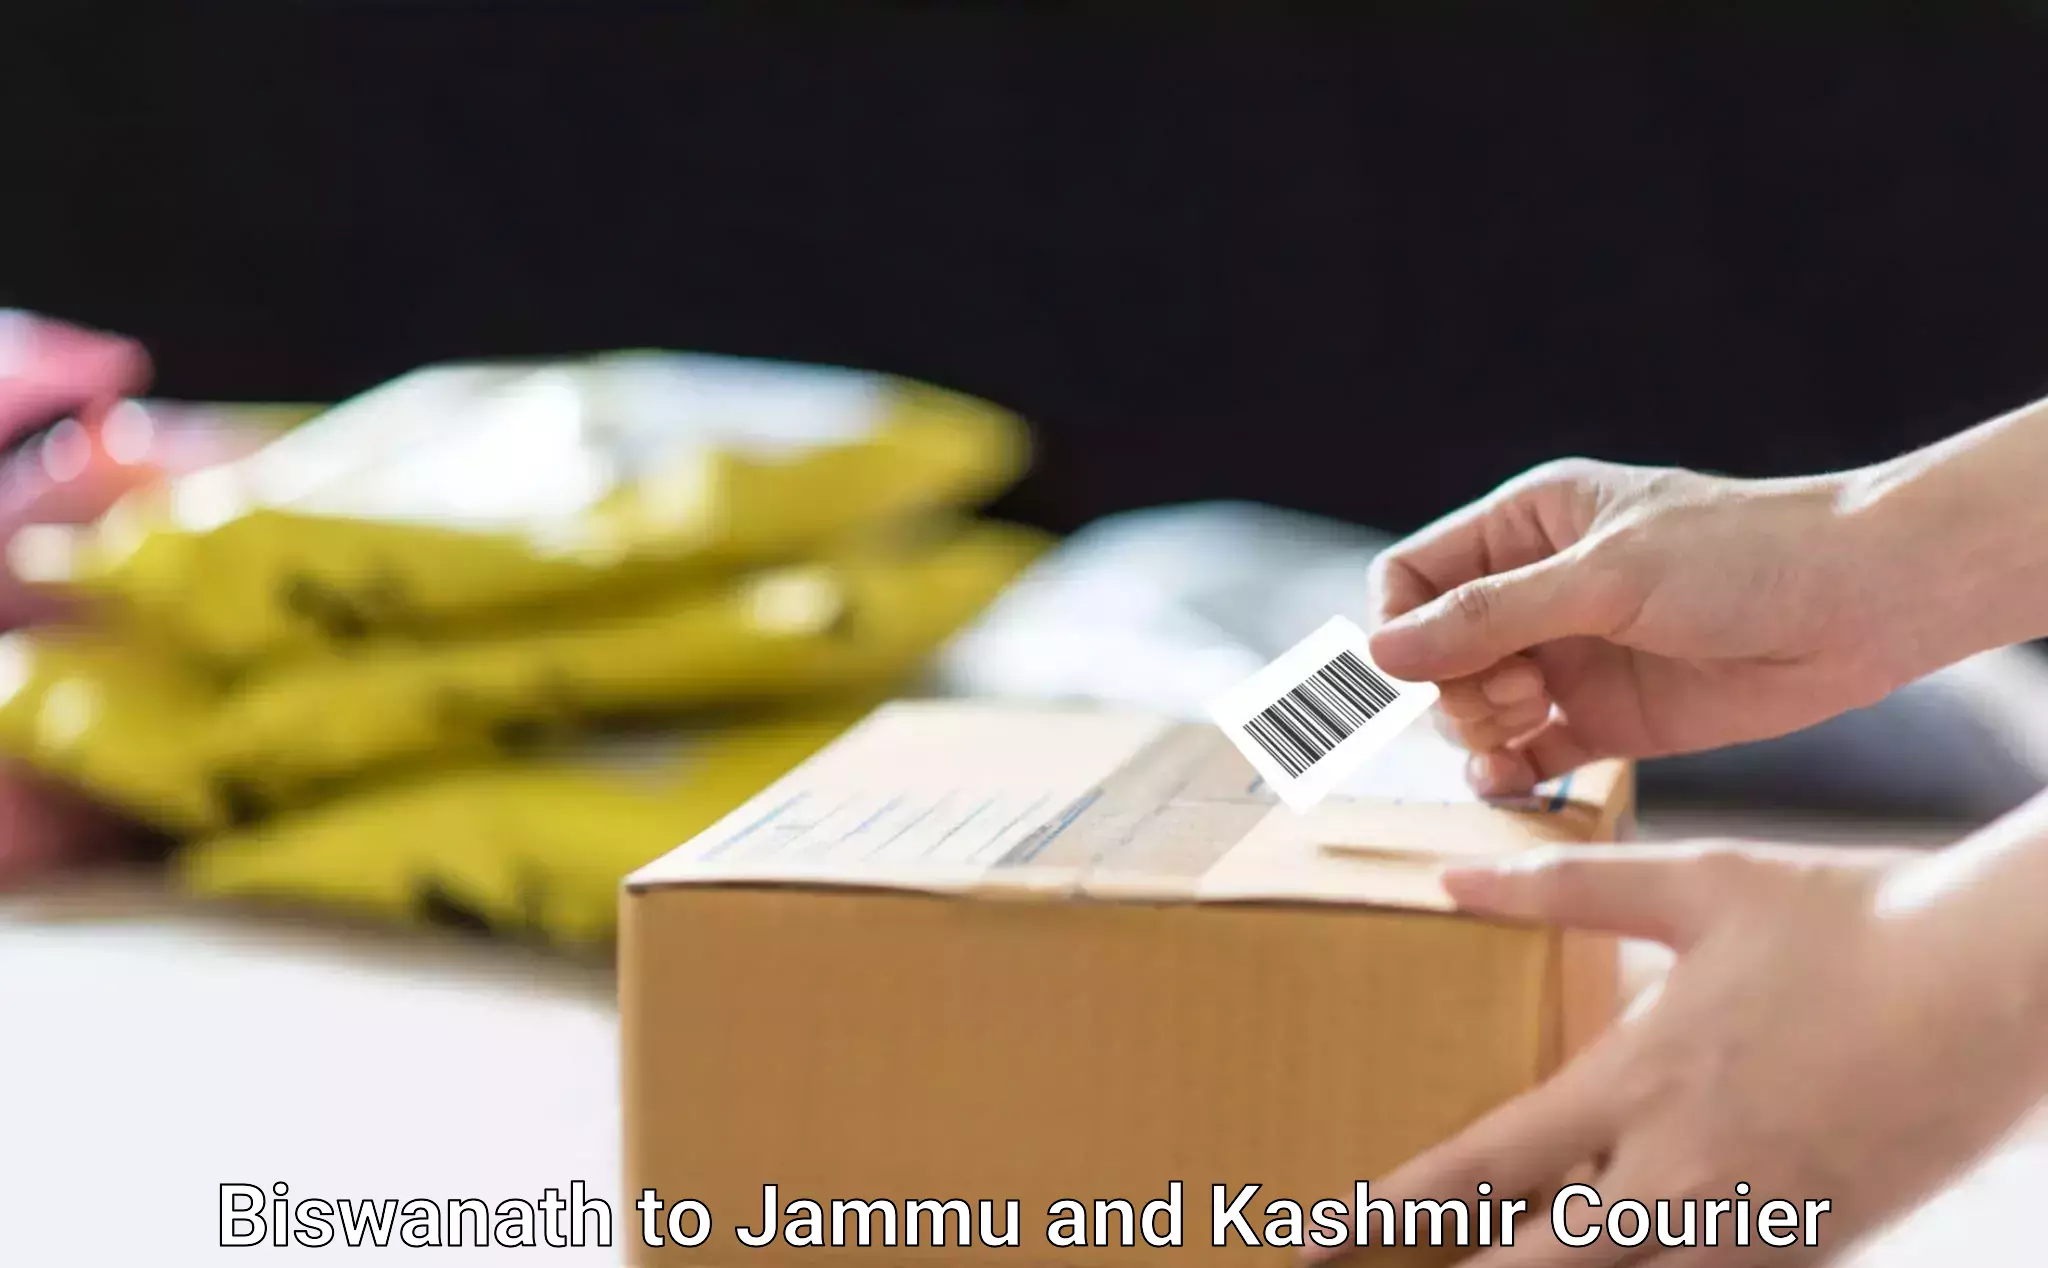 Online courier booking Biswanath to University of Kashmir Srinagar